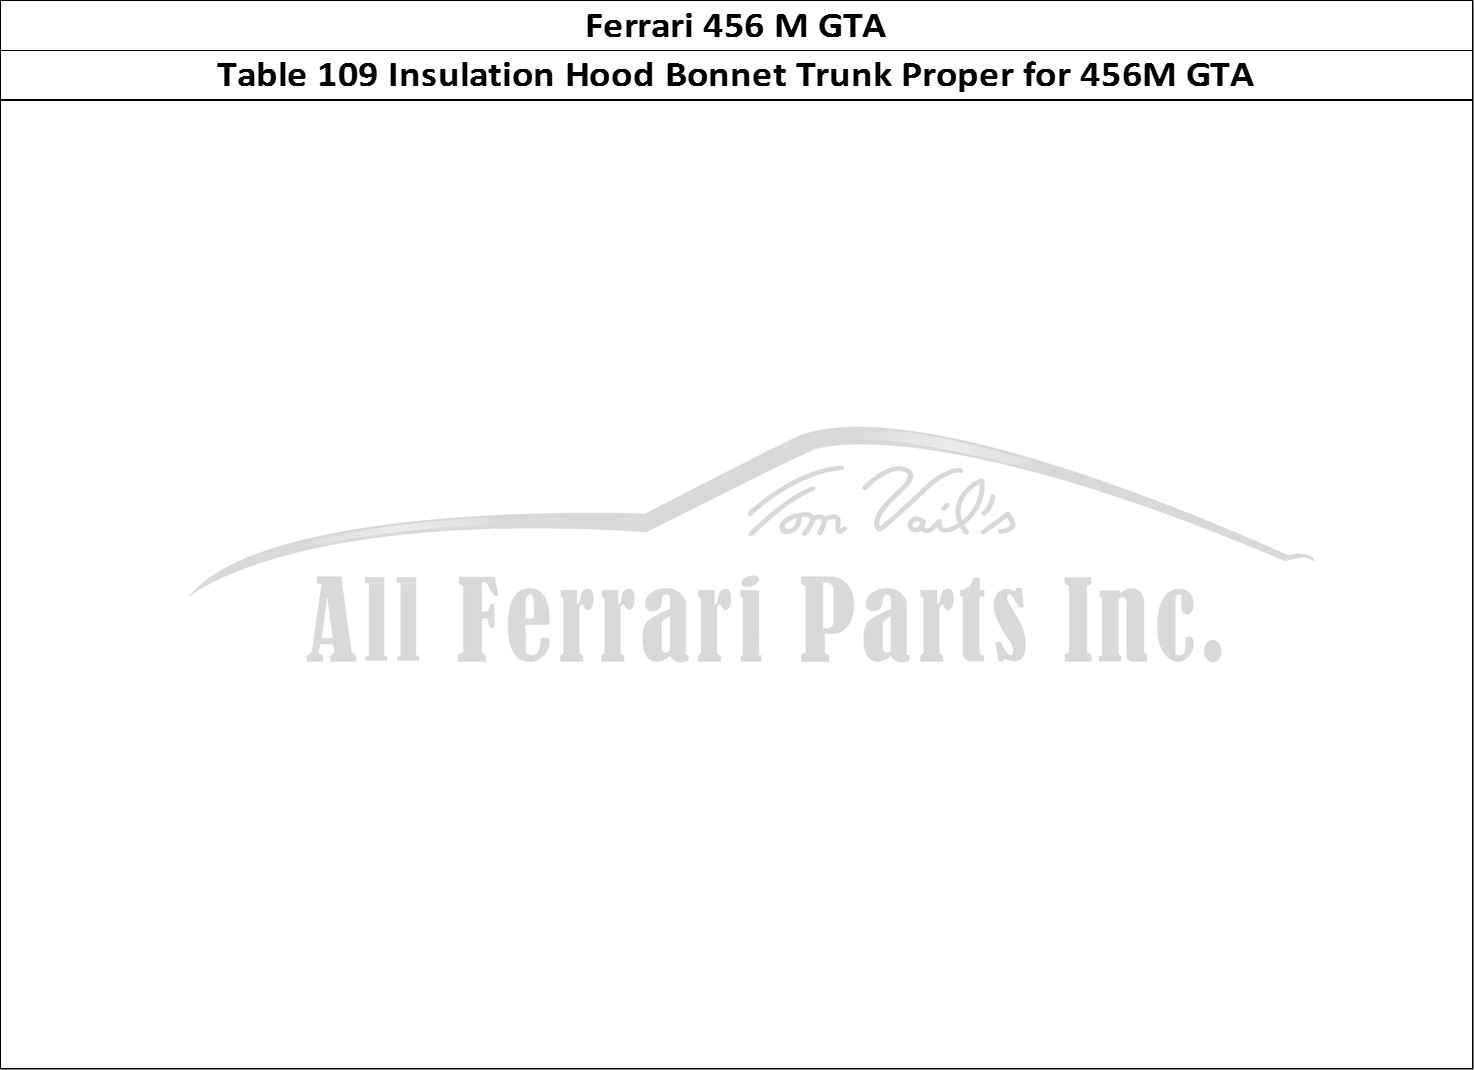 Ferrari Parts Ferrari 456 M GT Page 109 Trunk Hood Insulations -V